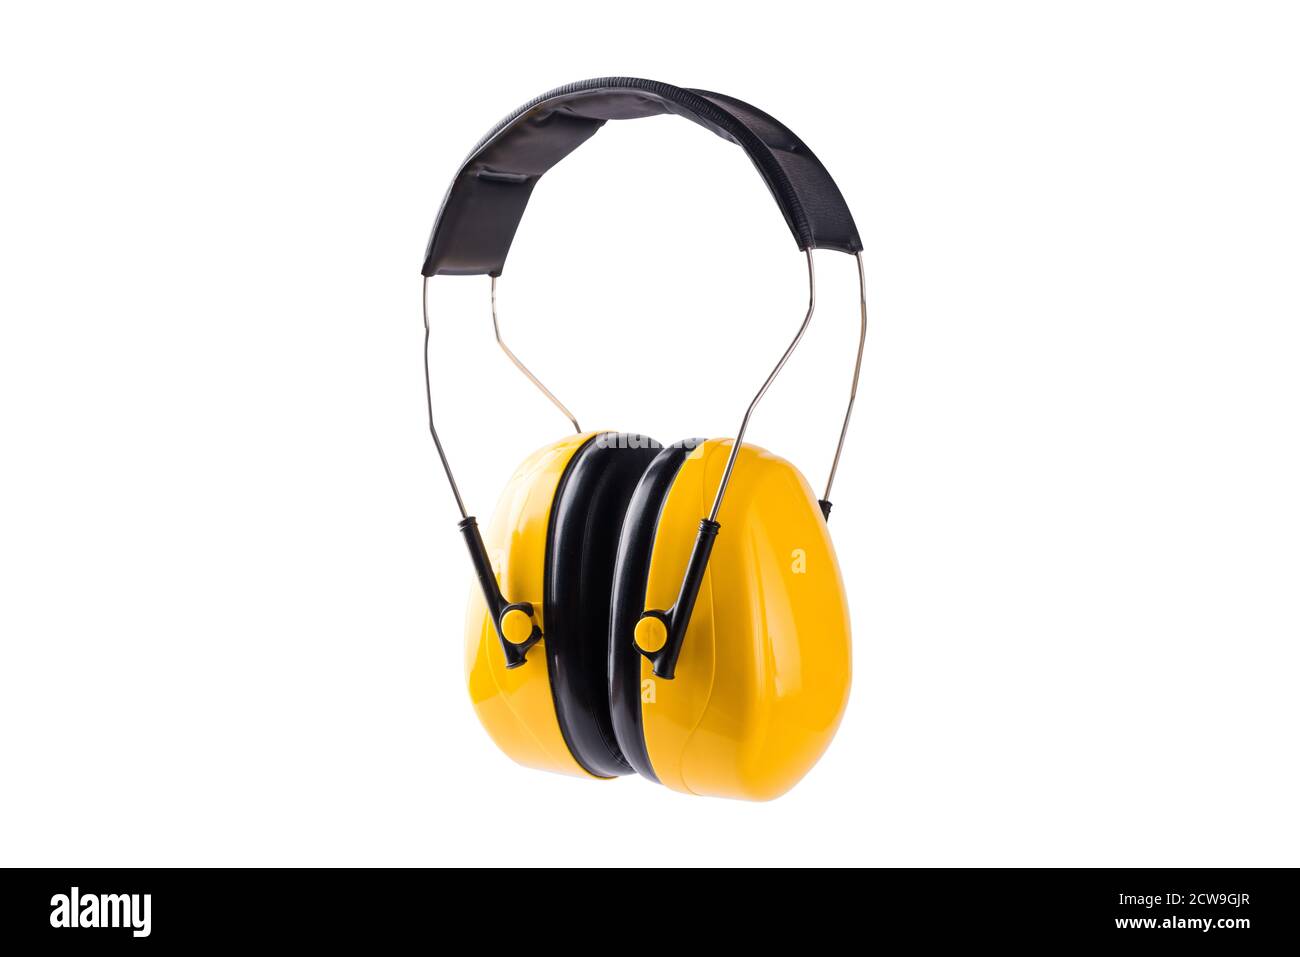 Auriculares protección de trabajo amarillos los orejeras evitan el ruido fuerte de la seguridad de los equipos de construcción de trabajo, disparo de estudio aislado sobre la espalda blanca Fotografía de